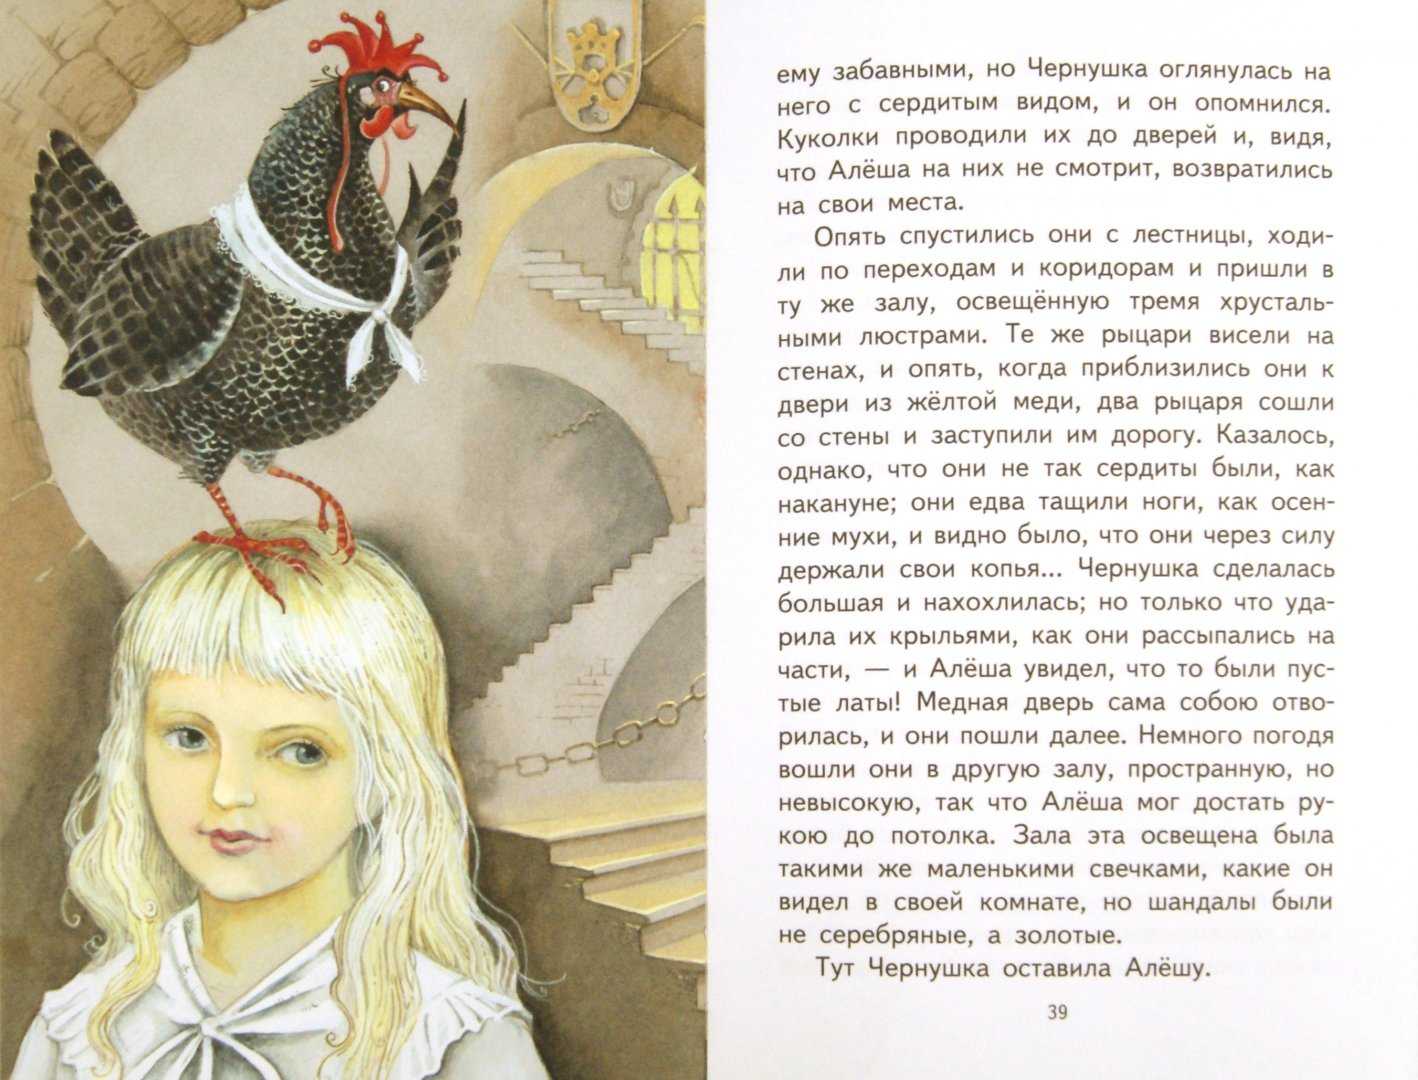 Читательский дневник «чёрная курица, или подземные жители» антония погорельского